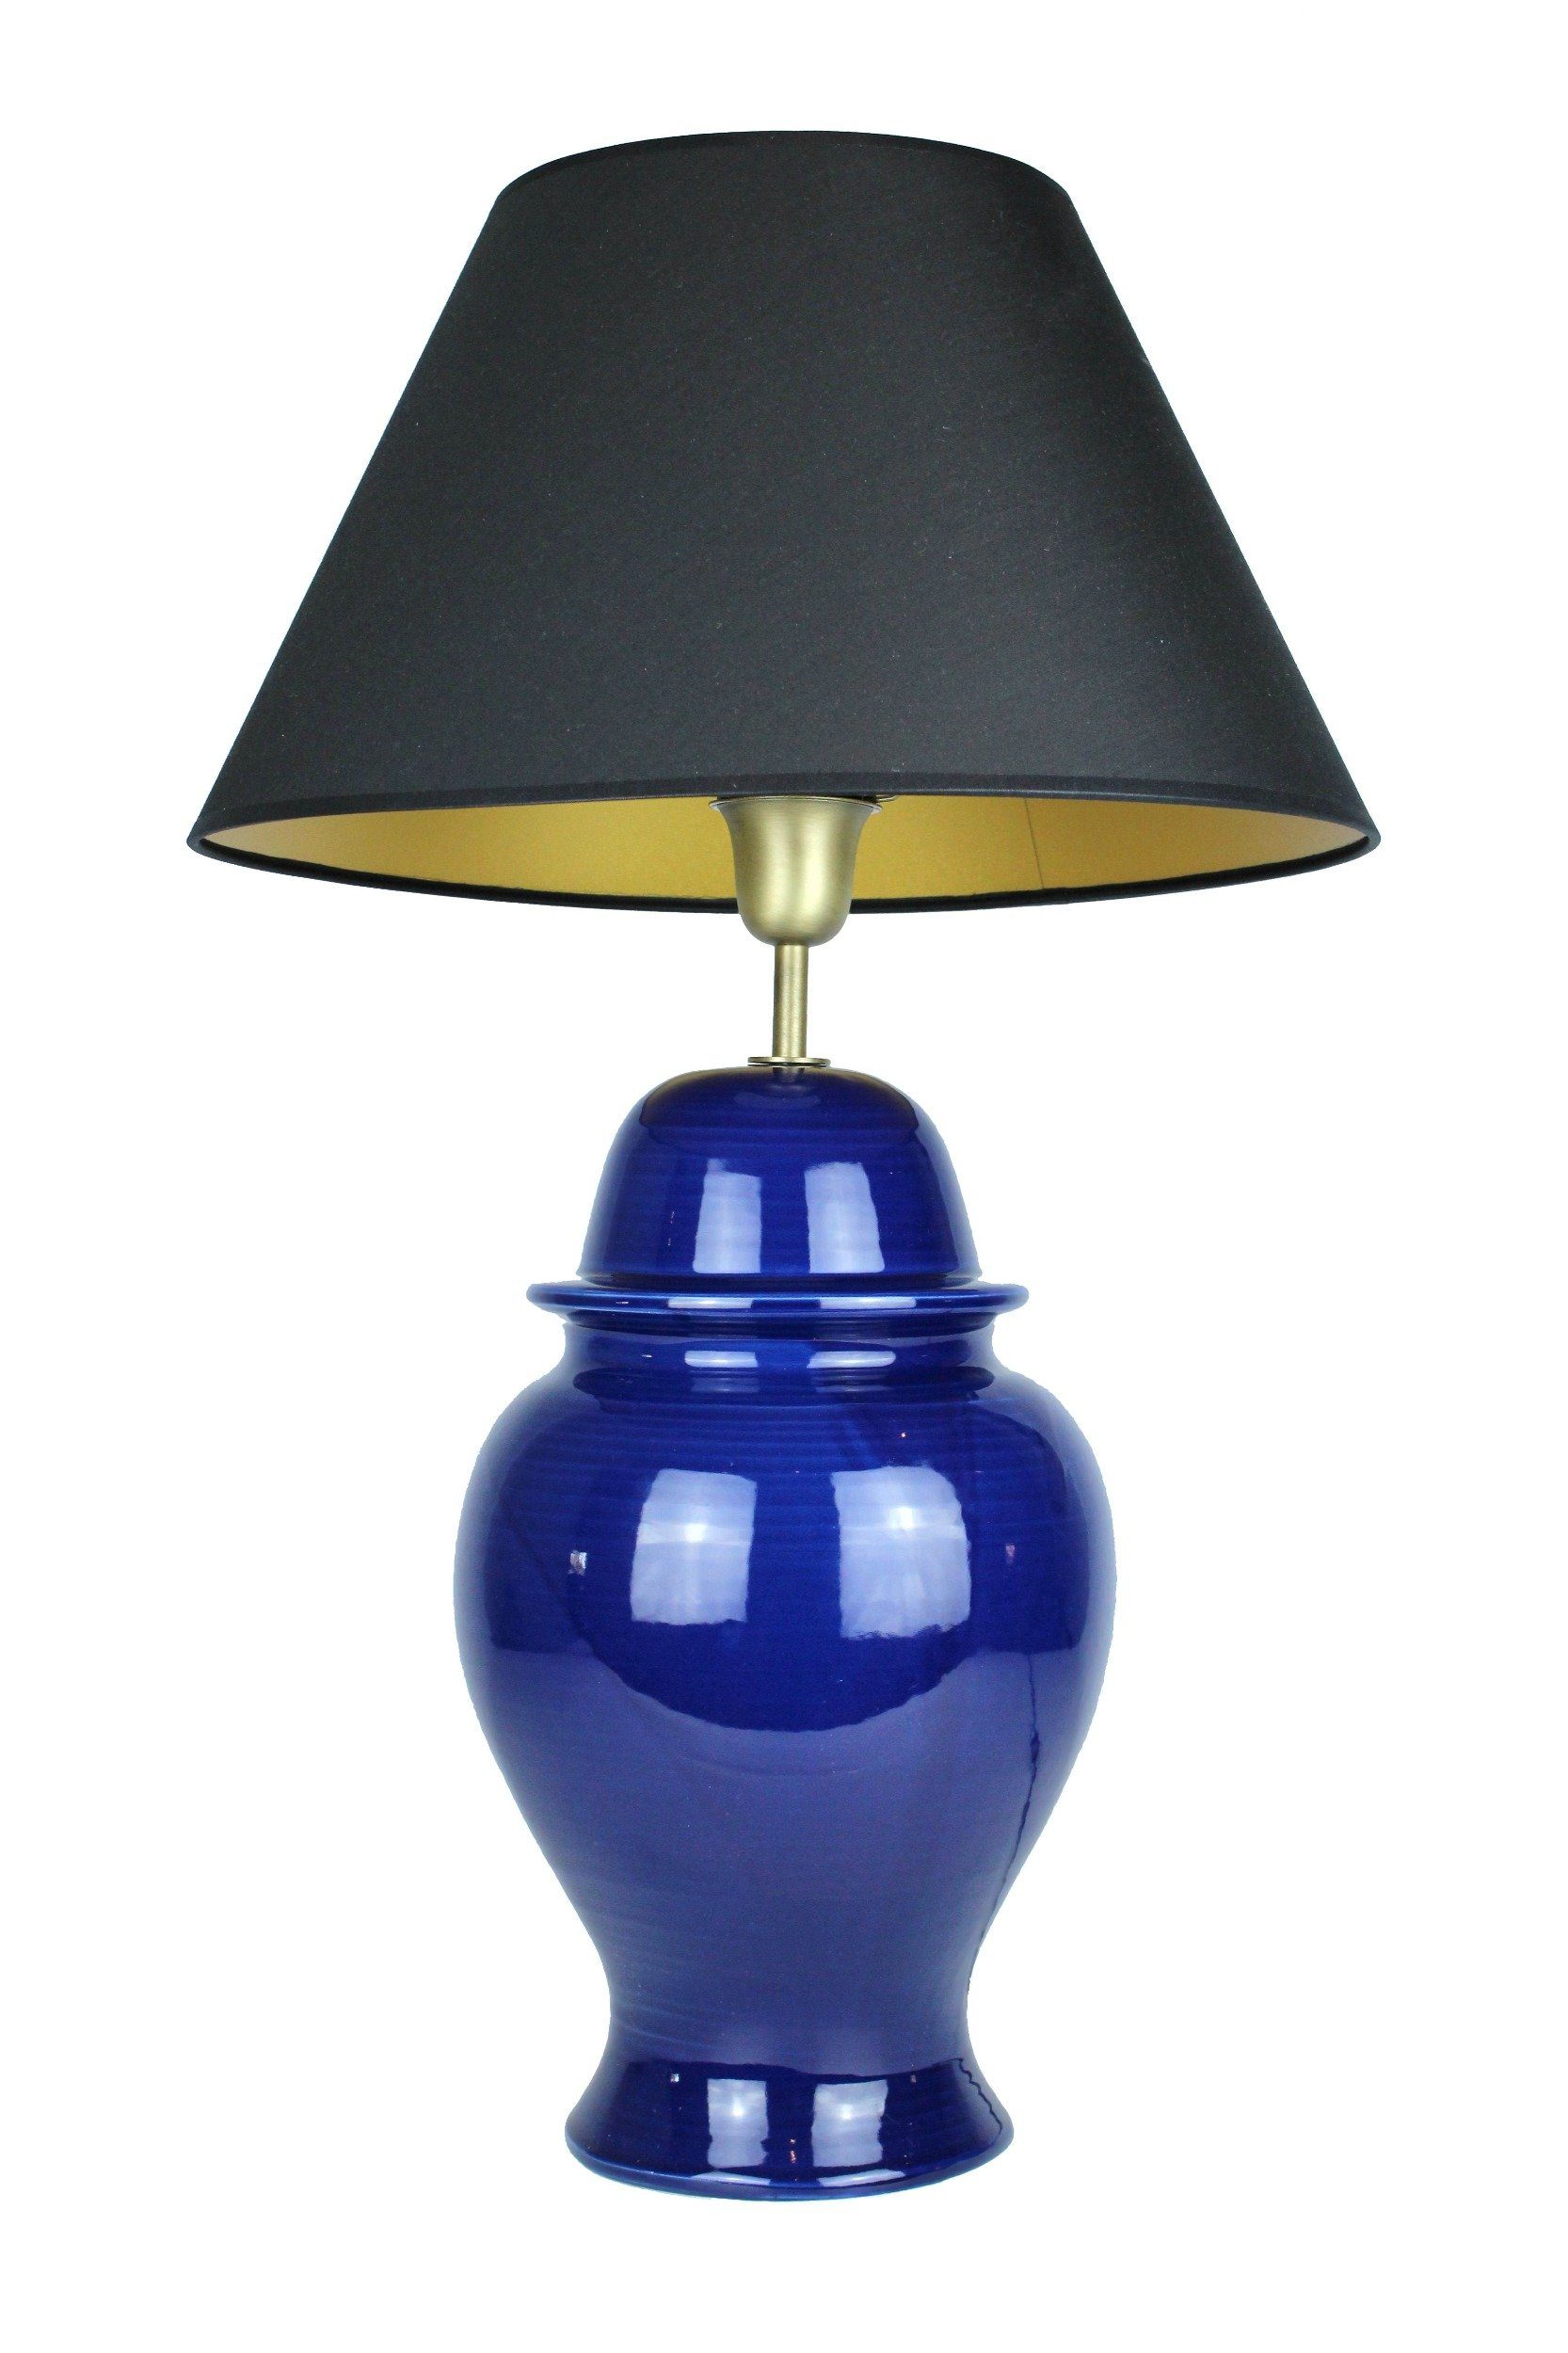 Signature Home Collection Schreibtischlampe, ohne Leuchtmittel, warmweiß, Tischlampe Keramik dunkelblau mit Lampenschirm